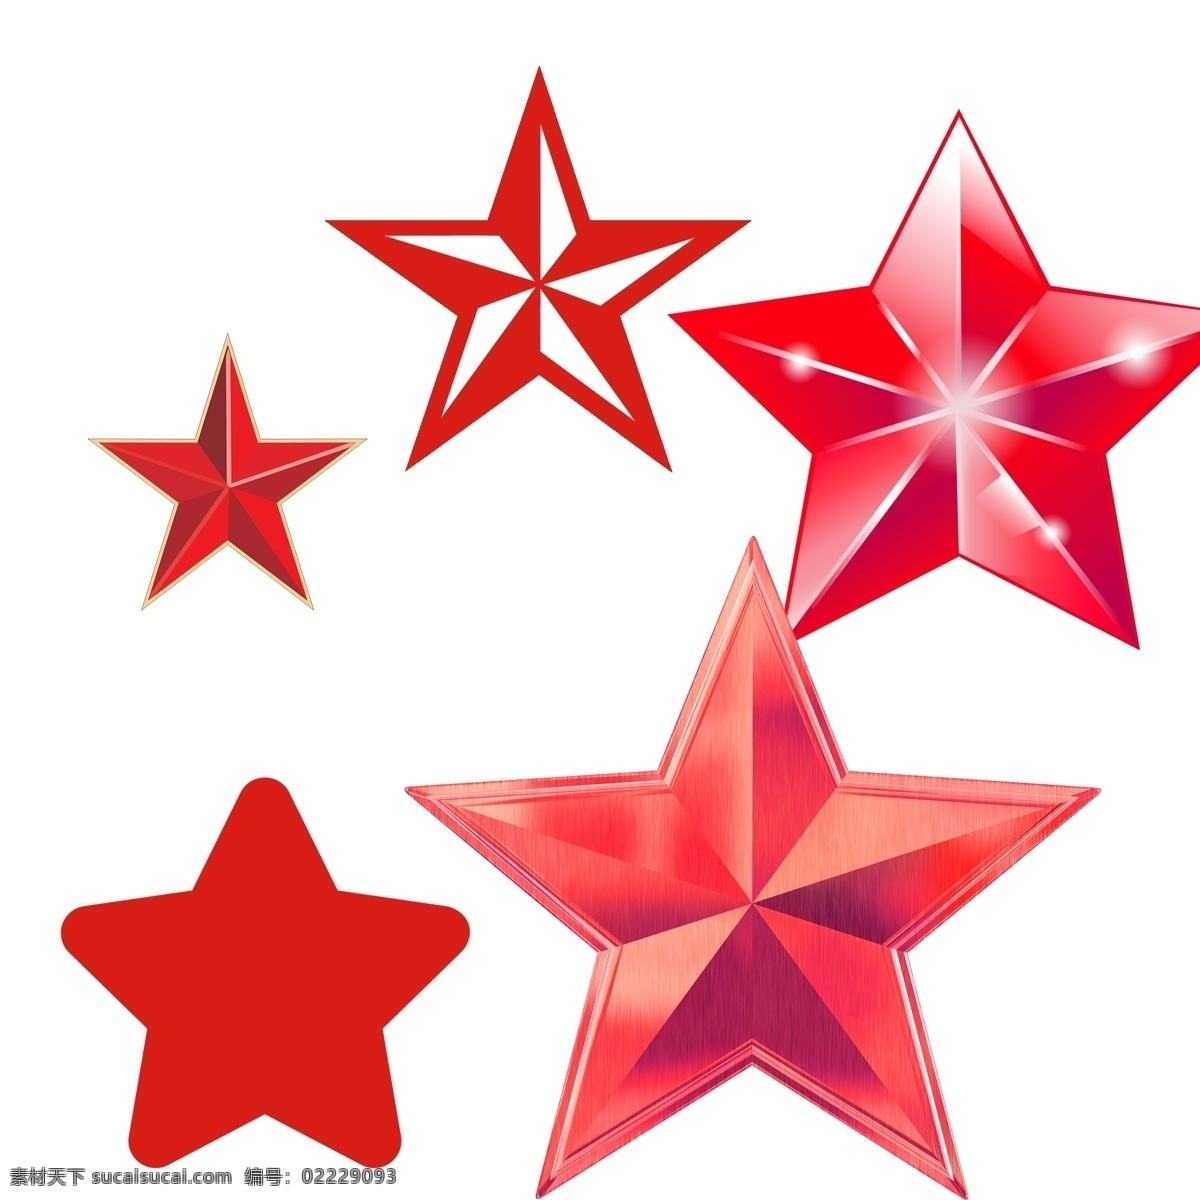 五角星星 六角星星 八角星星 扁平化图标 星星简笔画 星星元素 星星logo 星星设计 五角星图标 儿童星星 卡通星星 手绘星星 星星素描 星星矢量